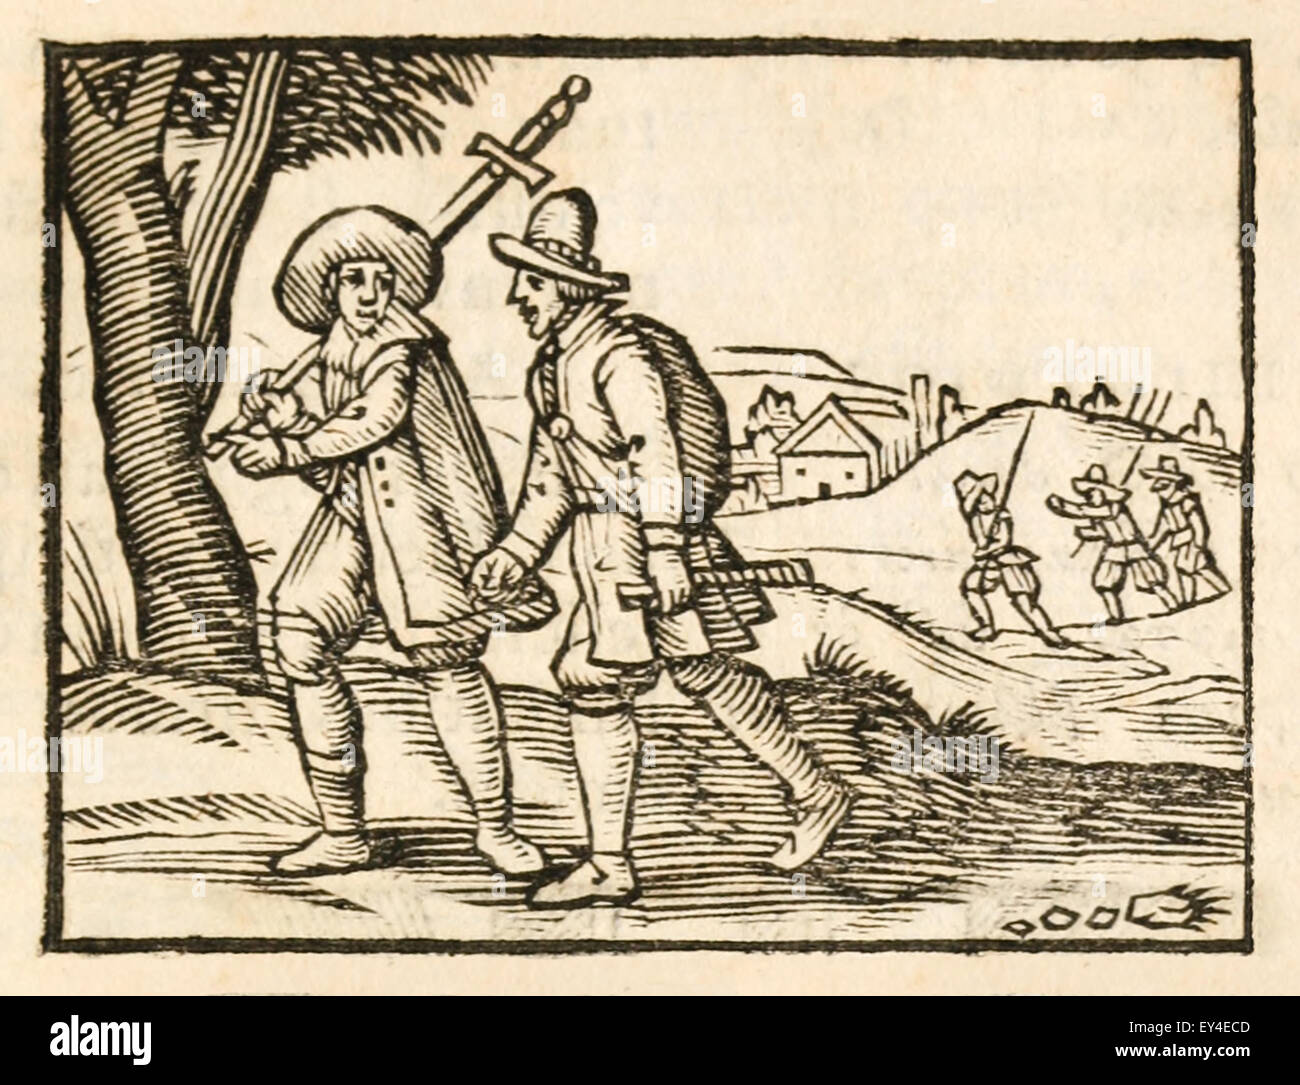 "Der Reisende" Fabel von Aesop (ca. 600). 17. Jahrhundert Holzschnitt Drucken zur Veranschaulichung Aesop Fabeln. Siehe Beschreibung für mehr Informationen. Stockfoto